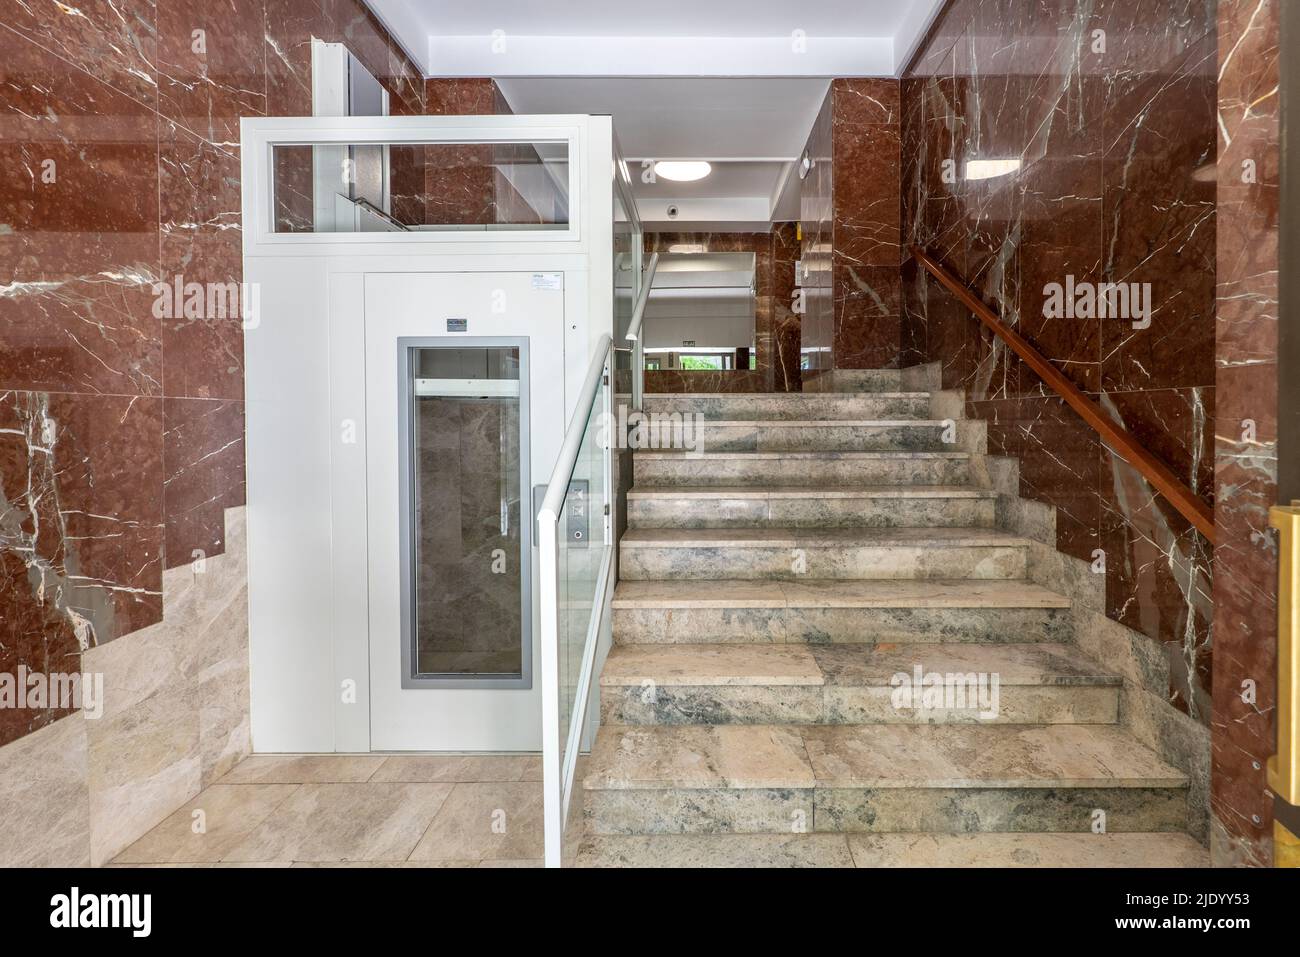 Portail d'un bâtiment avec des escaliers en marbre et un ascenseur hydraulique pour les personnes âgées et les personnes à mobilité réduite Banque D'Images